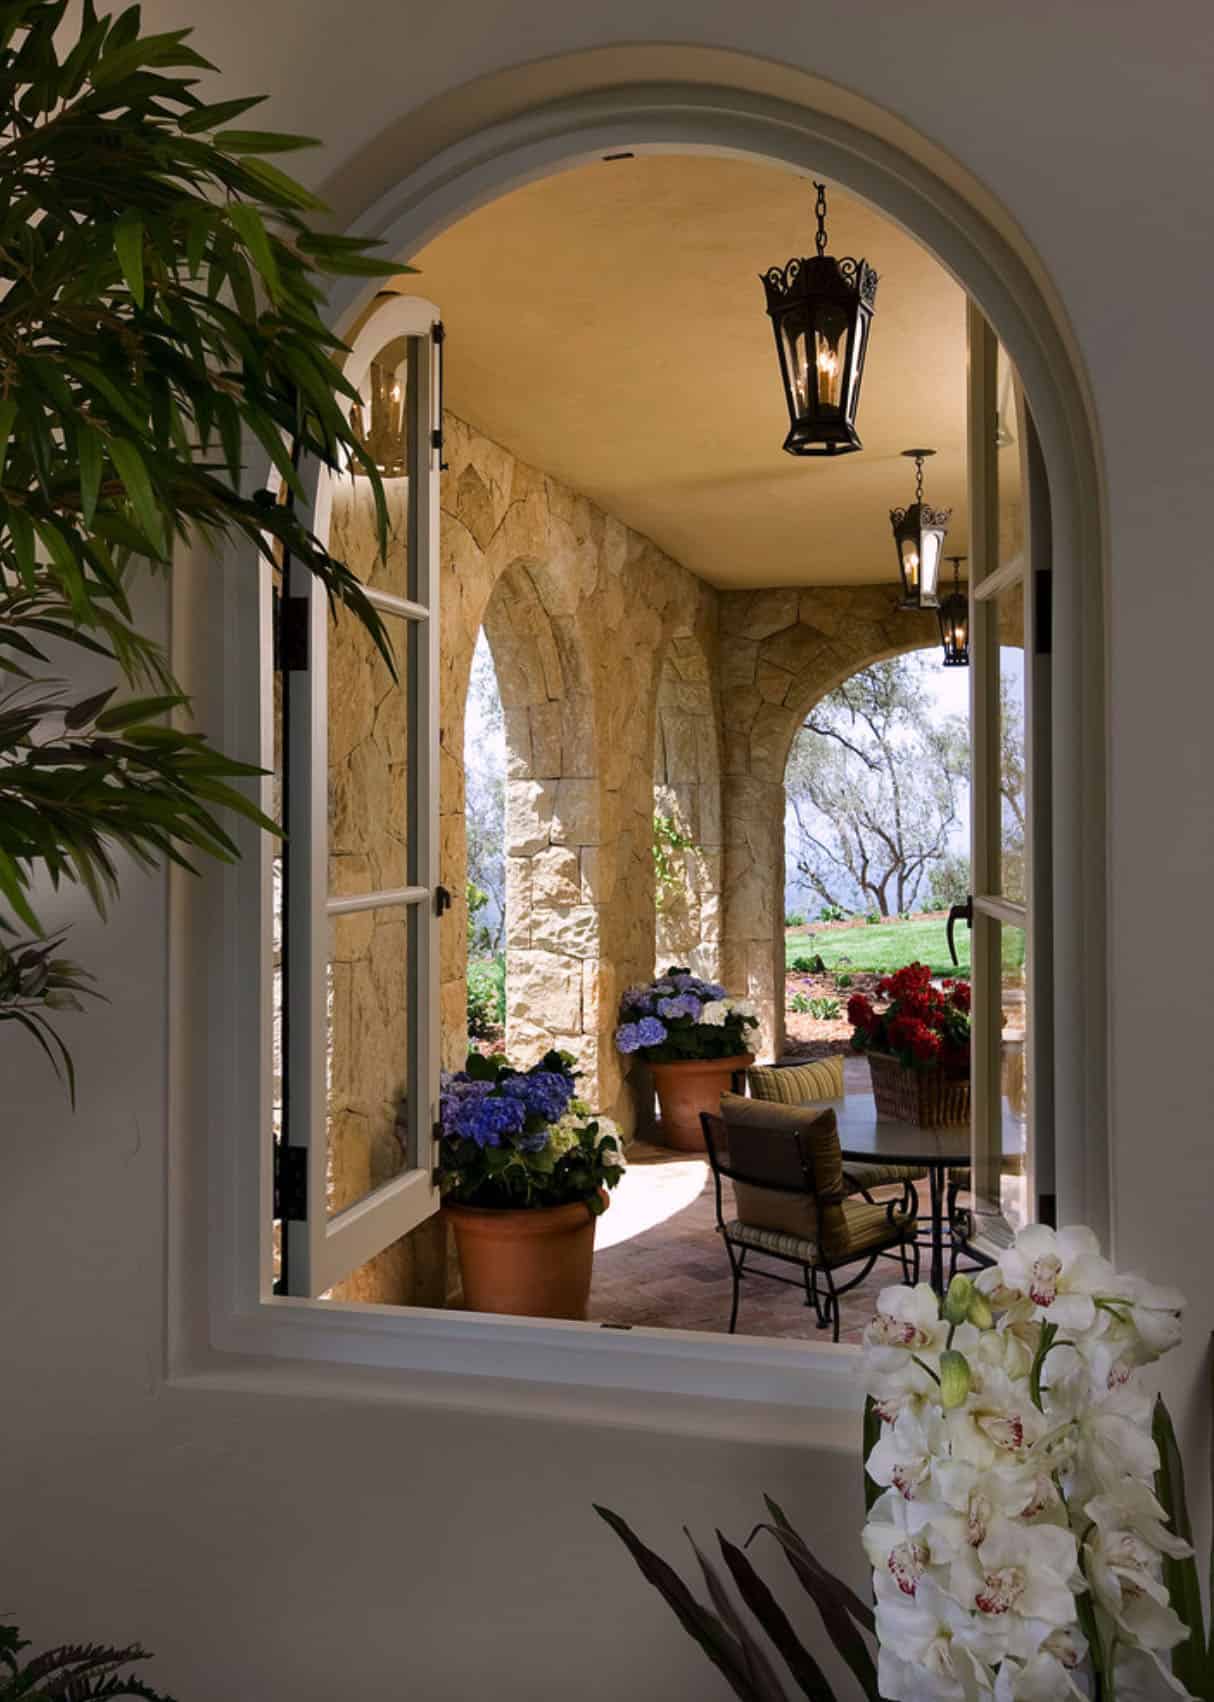 mediterranean-style-window-and-porch